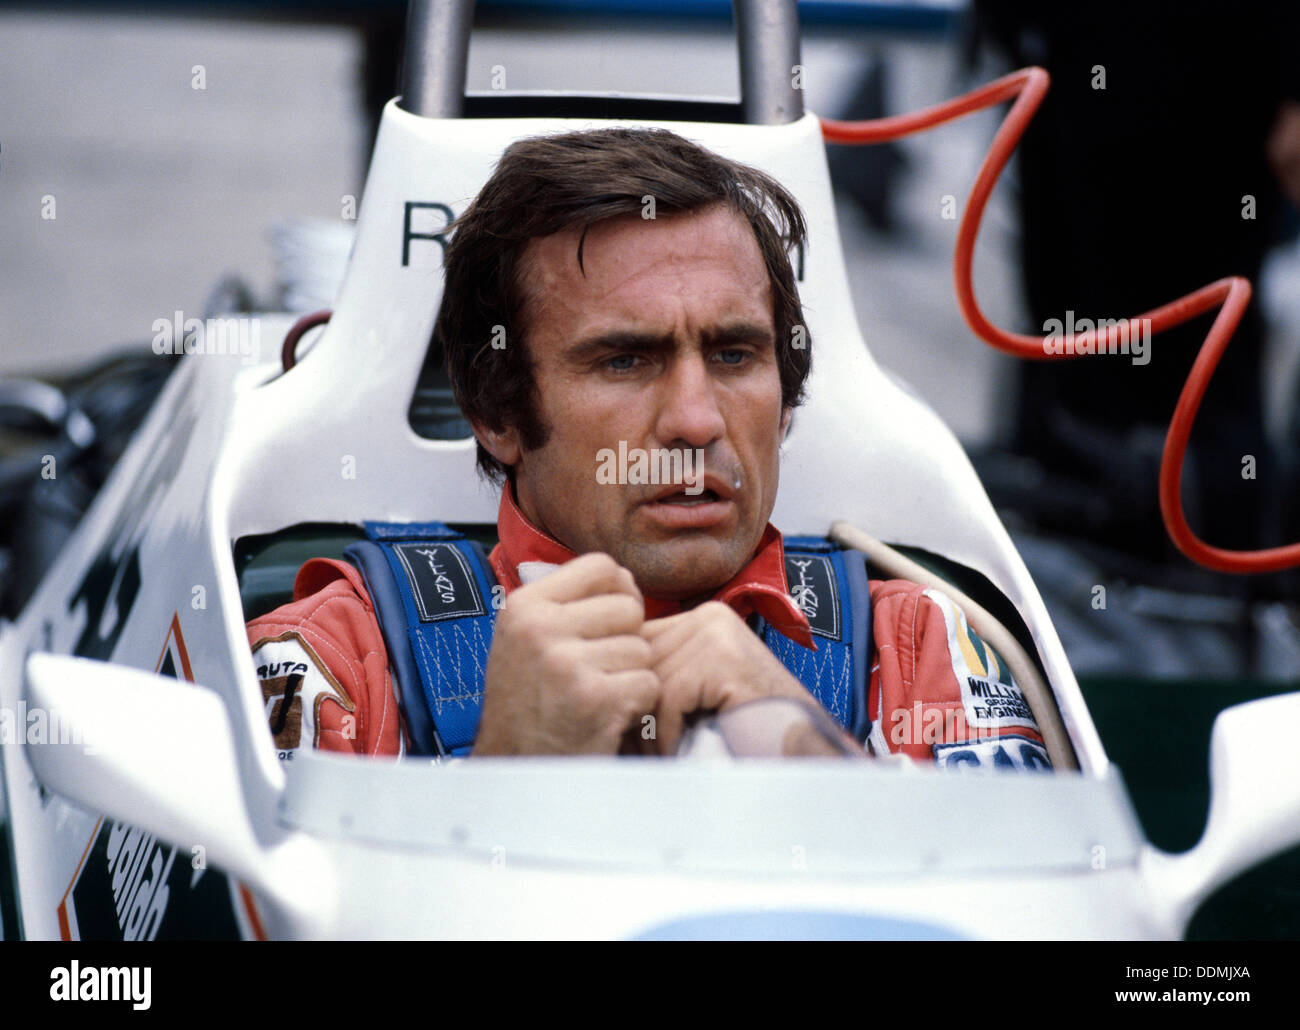 Carlos Reutemann, 1980. Artist: Unknown Stock Photo